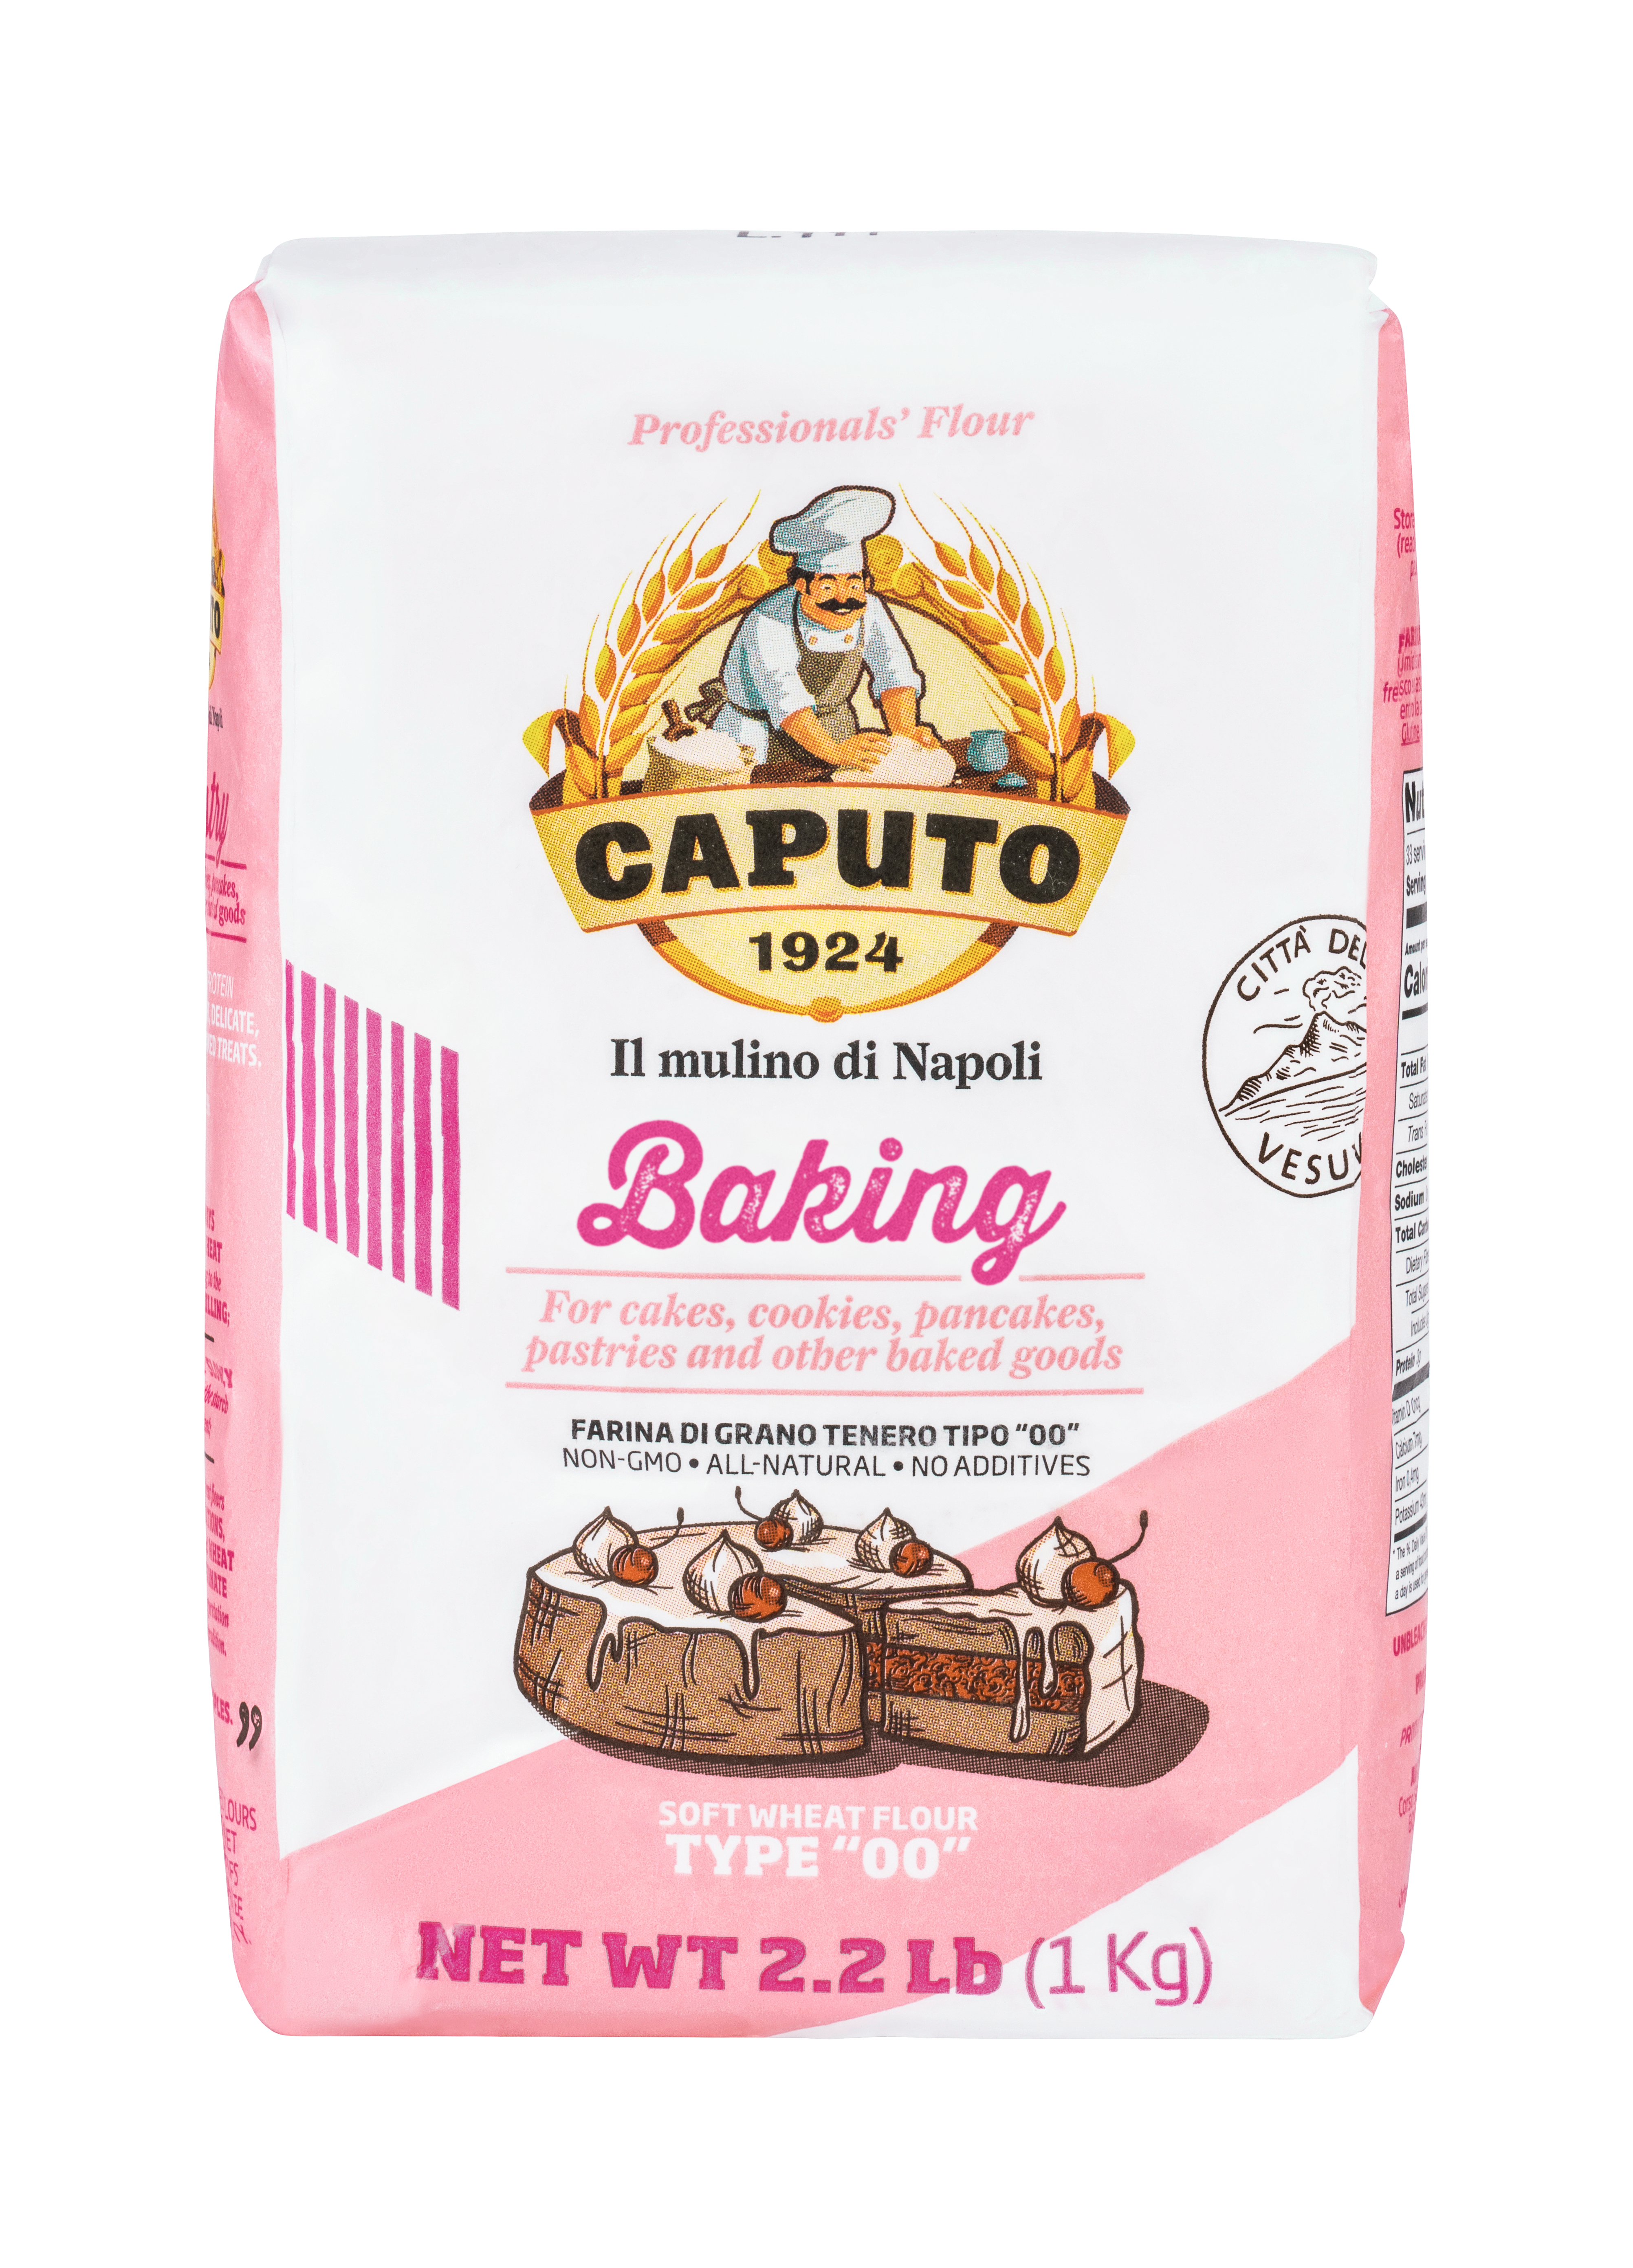 Caputo "00" Baking Flour